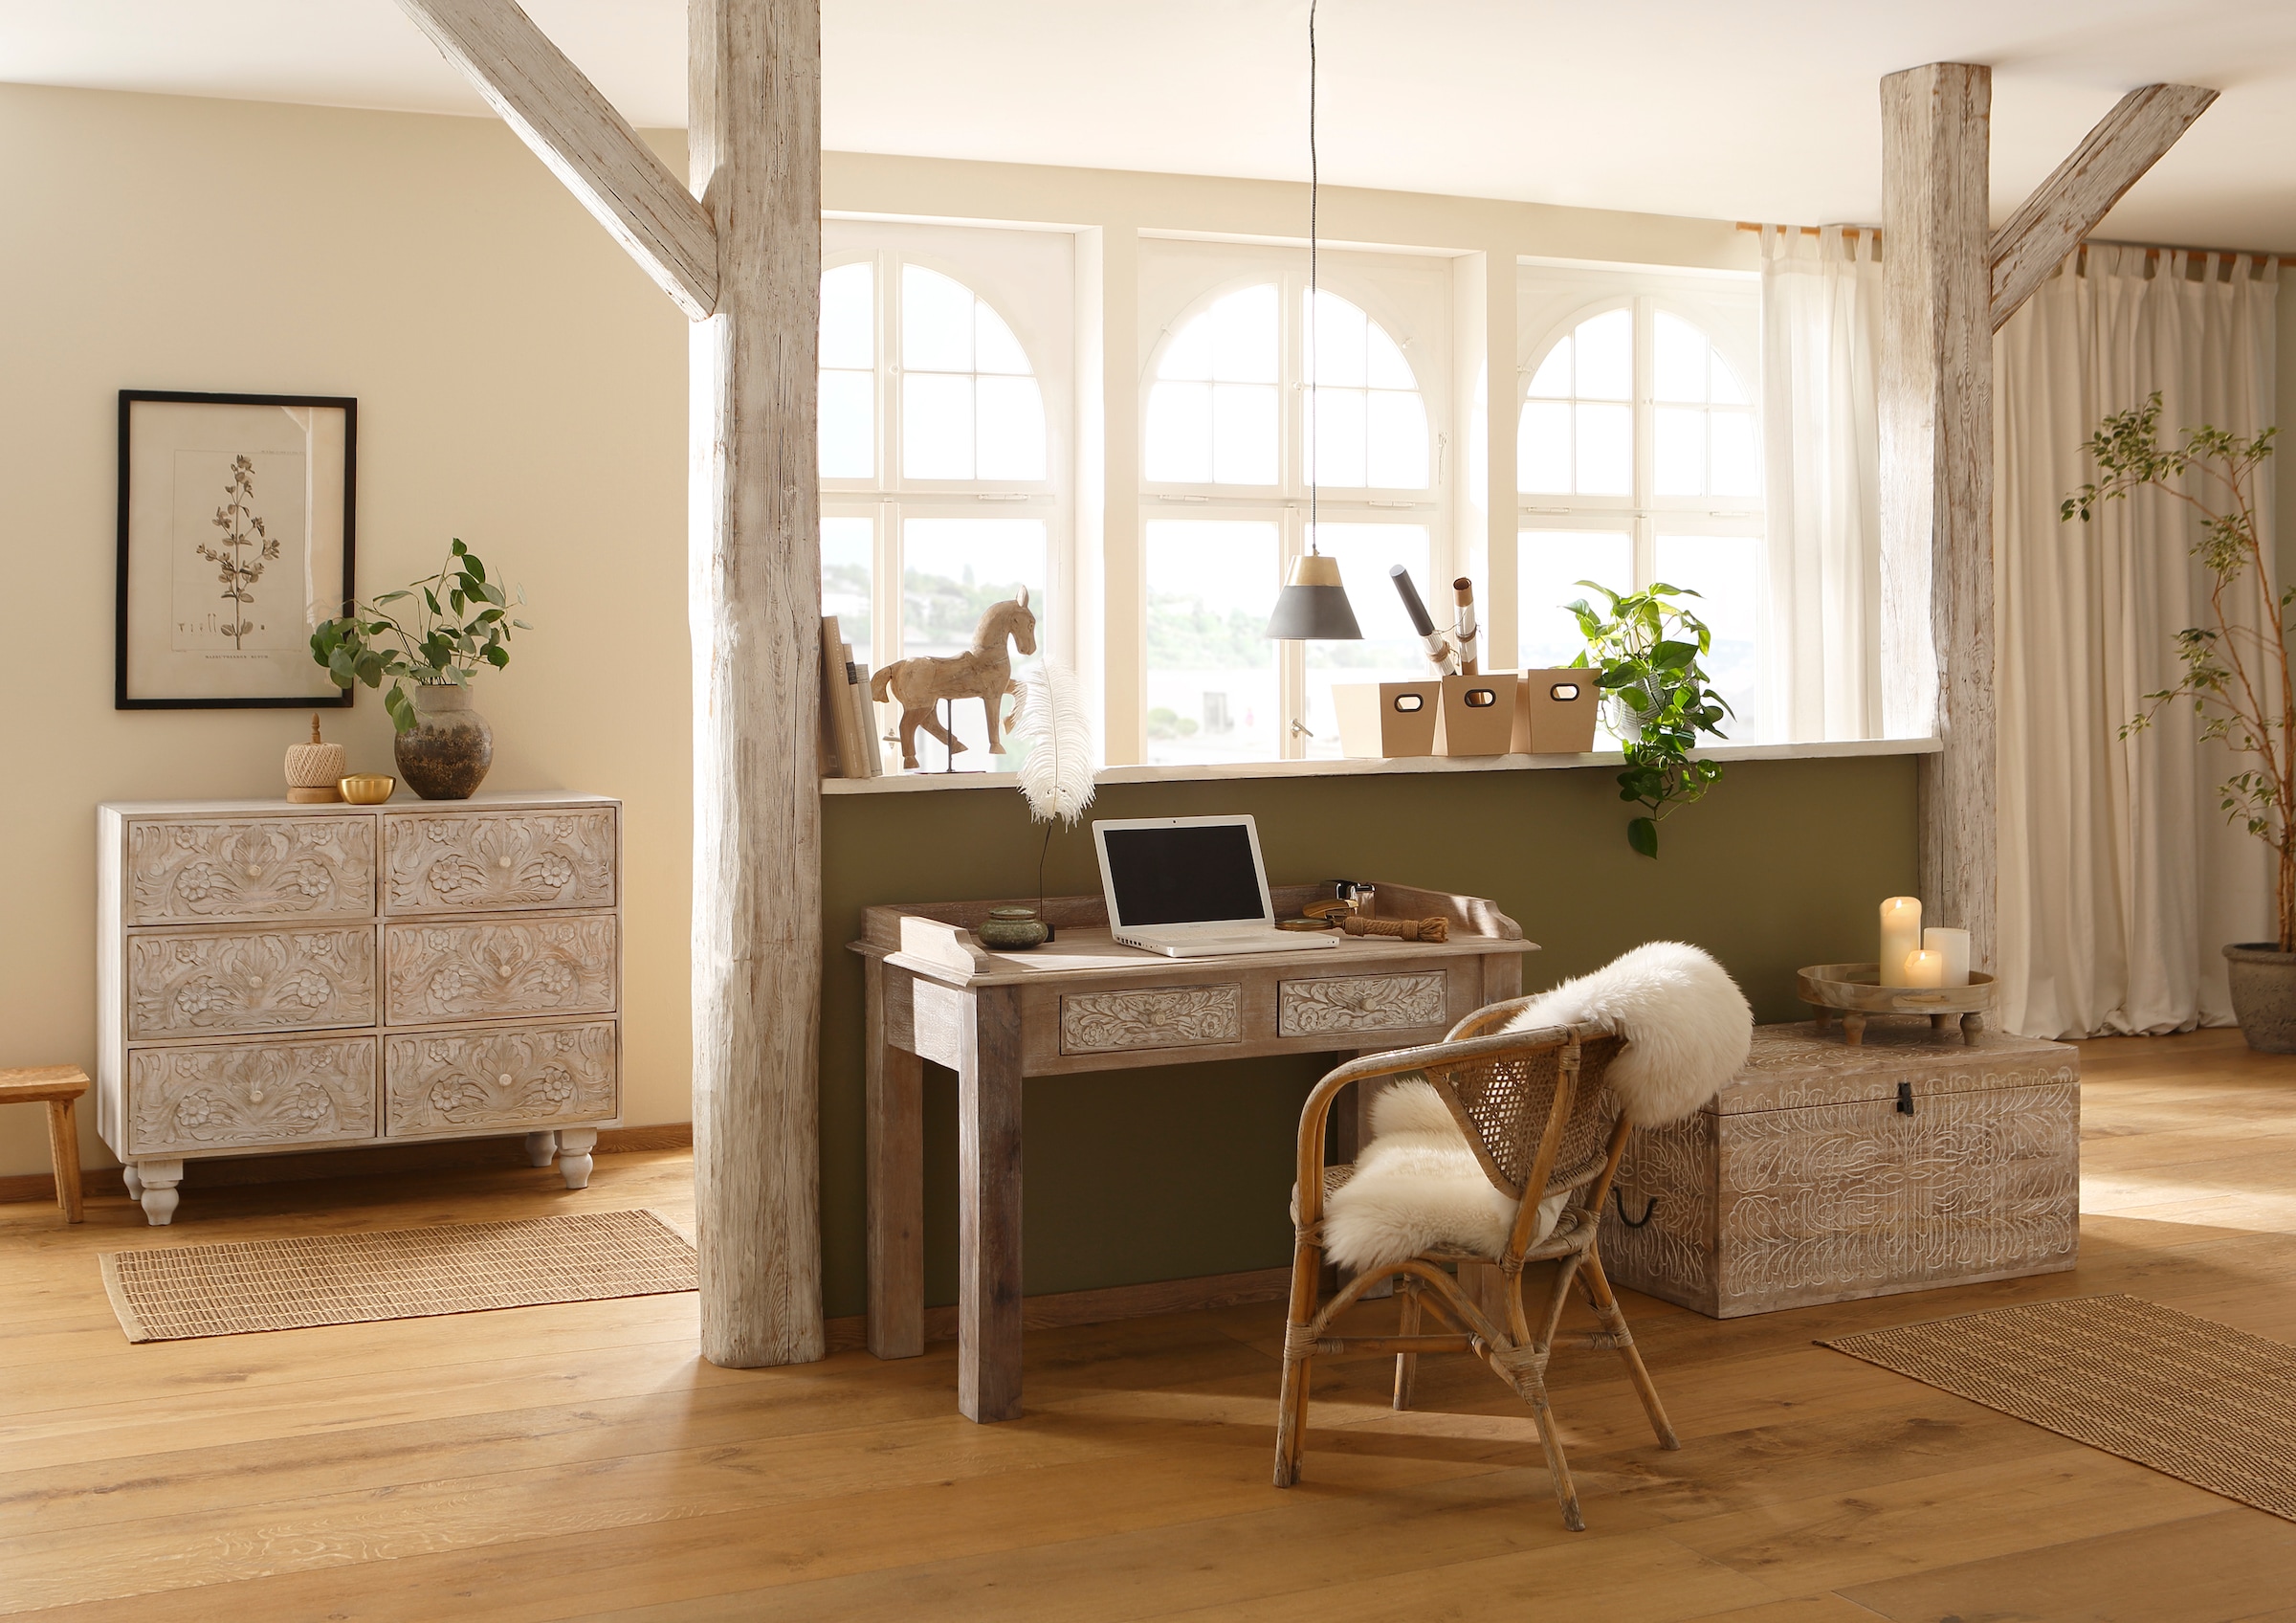 Home affaire Truhentisch »Lavin«, Mangoholz, mit dekorativen Schnitzereien, Handgefertigt, Breite 90 cm